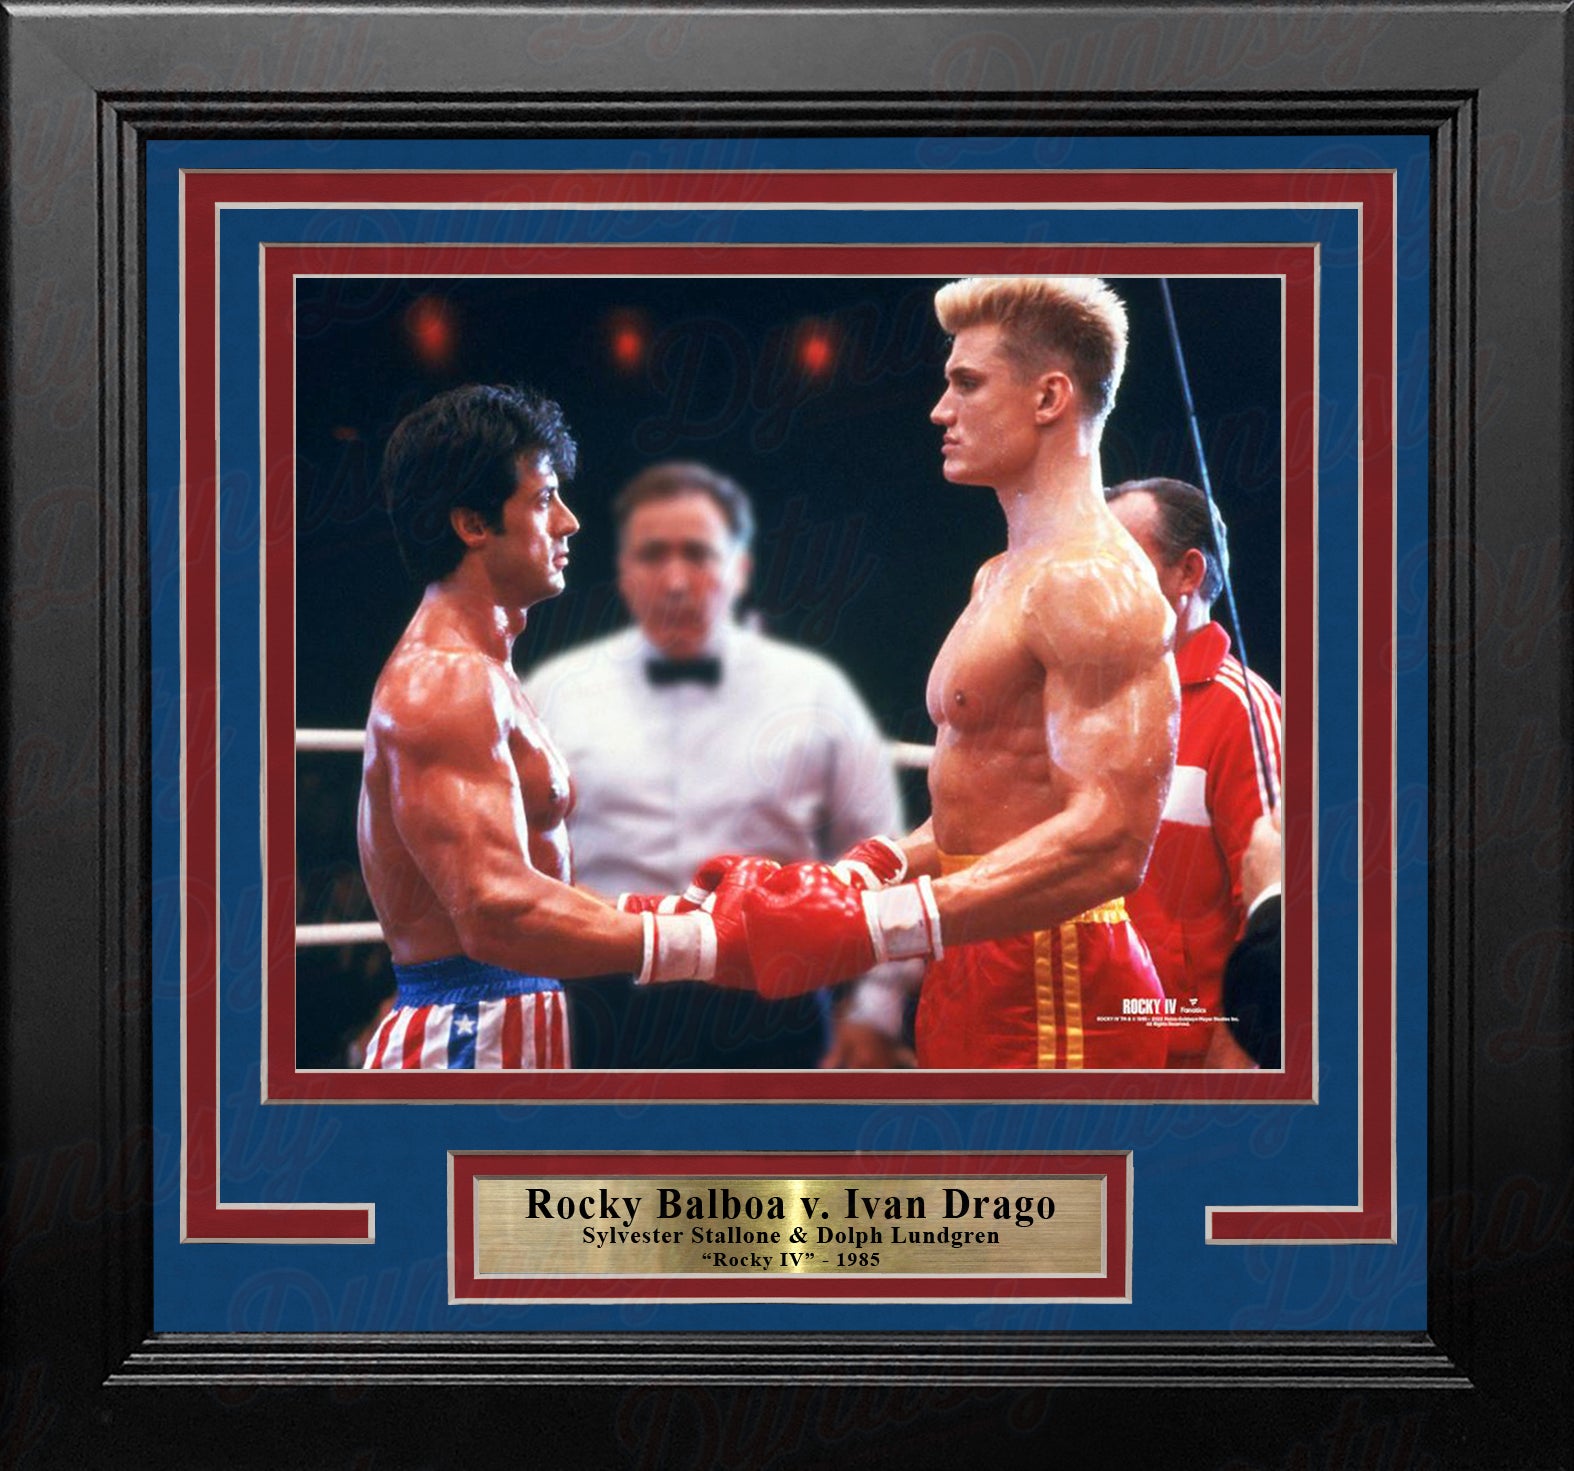 Rocky Balboa v. Ivan Drago 8" x 10" Framed Movie Photo - Dynasty Sports & Framing 